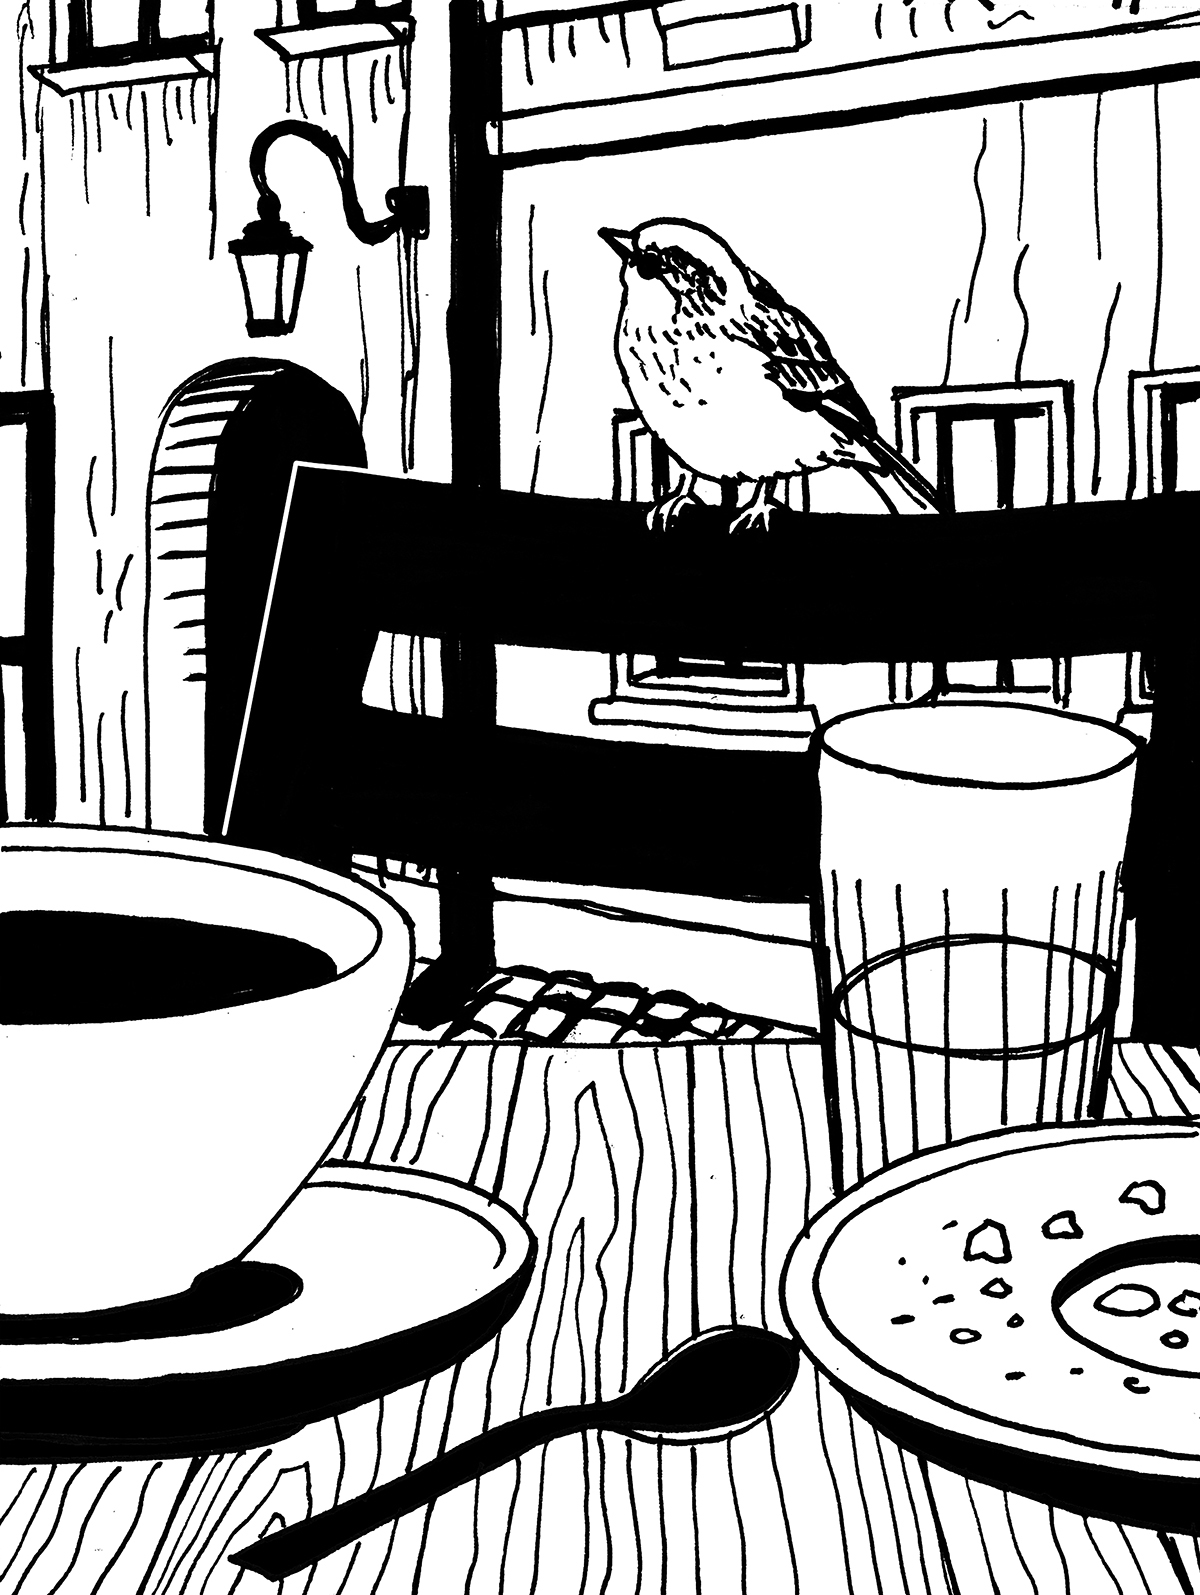 Wróbel siedzący na oparciu krzesła przy stoliku kawiarnianym. Na stoliku stoi filiżanka kawy, szklanka wody i talerz z okruszkami. W tle widoczne staromiejskie kamienice.